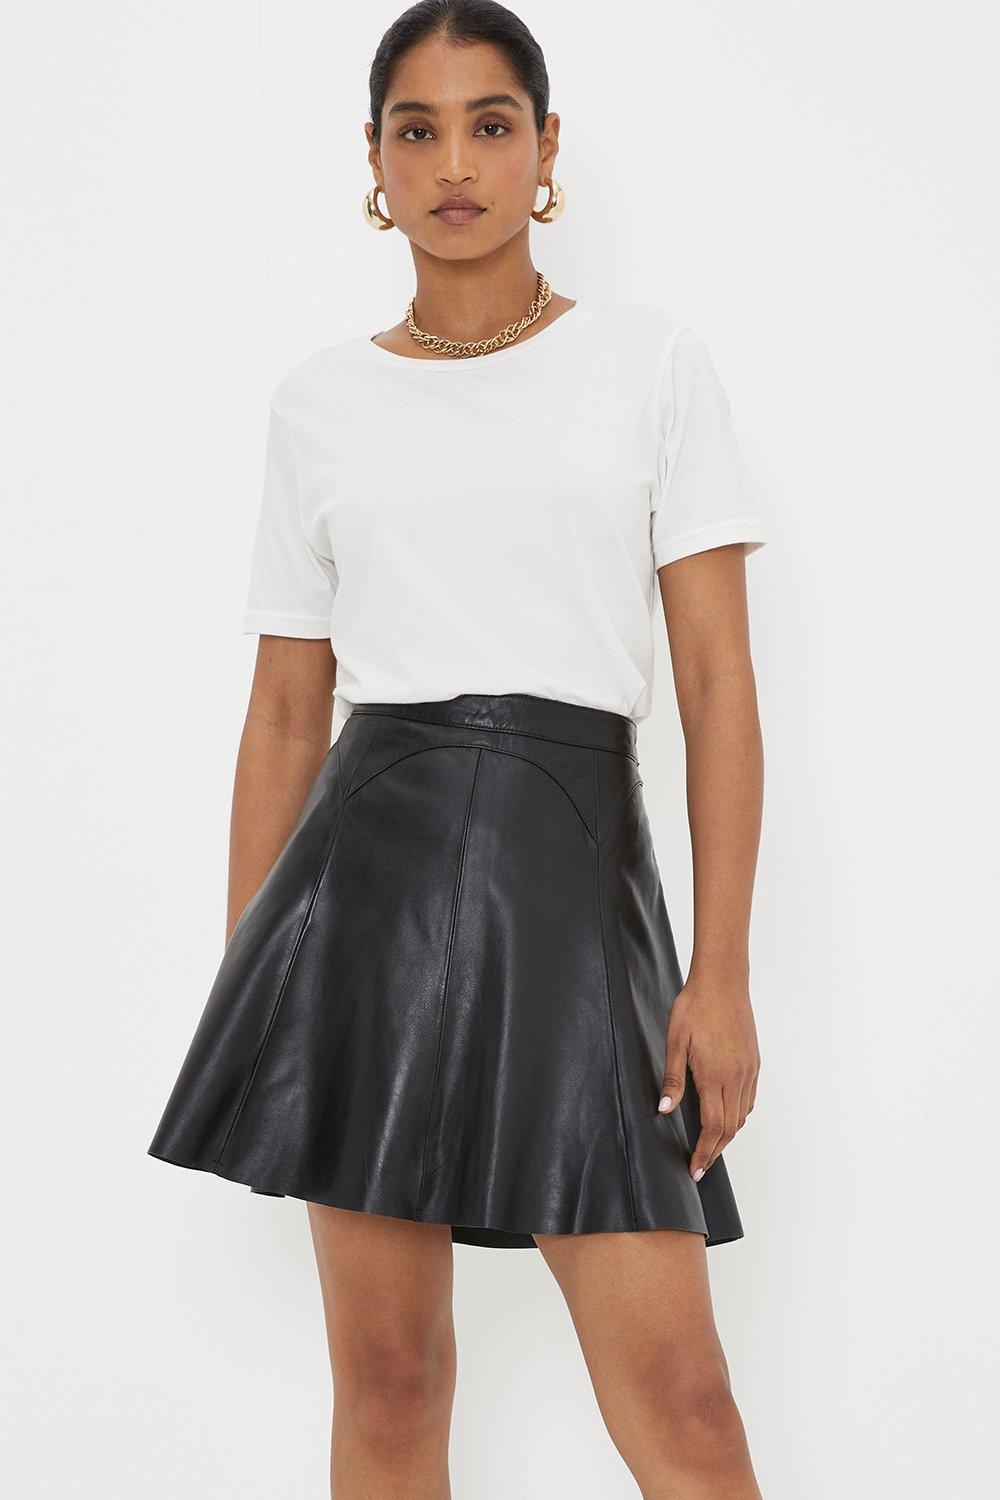 Women’s Real Leather Mini Skirt - black - S